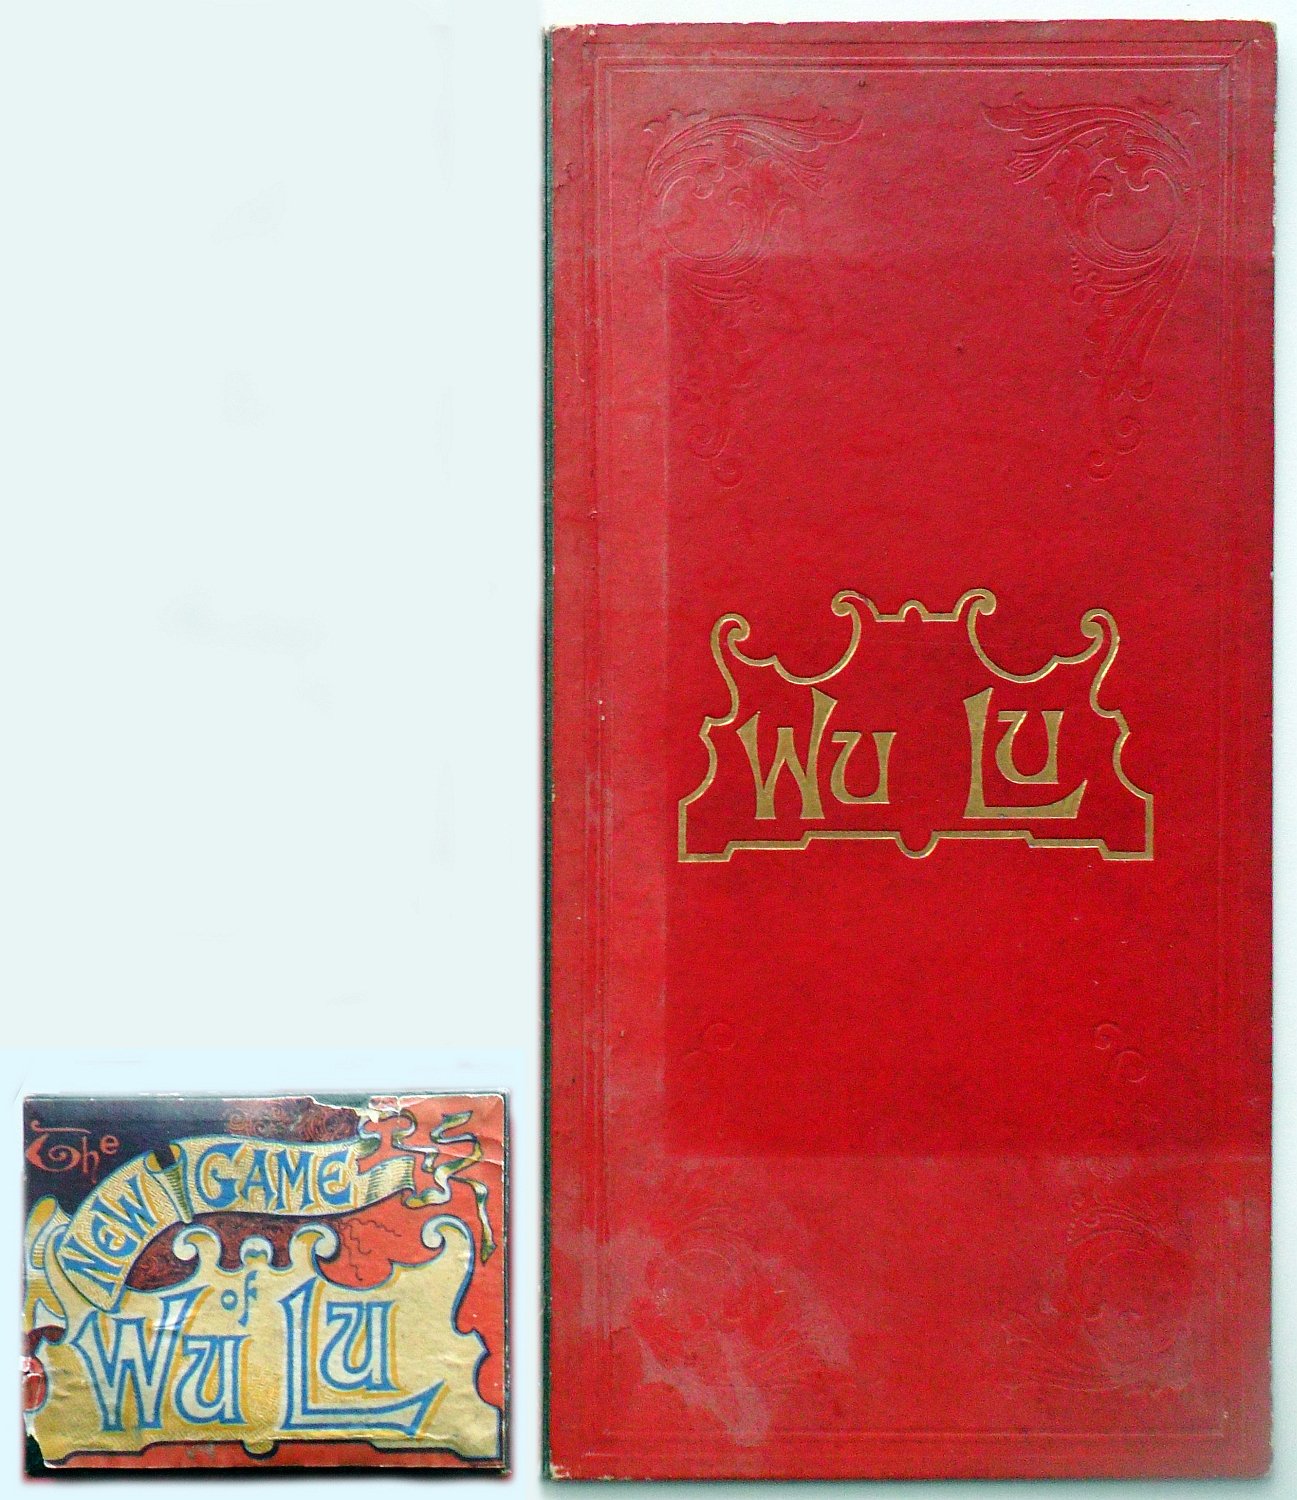 The New Game of Wu Lu (Het Nieuwe Spel Wu Lu)